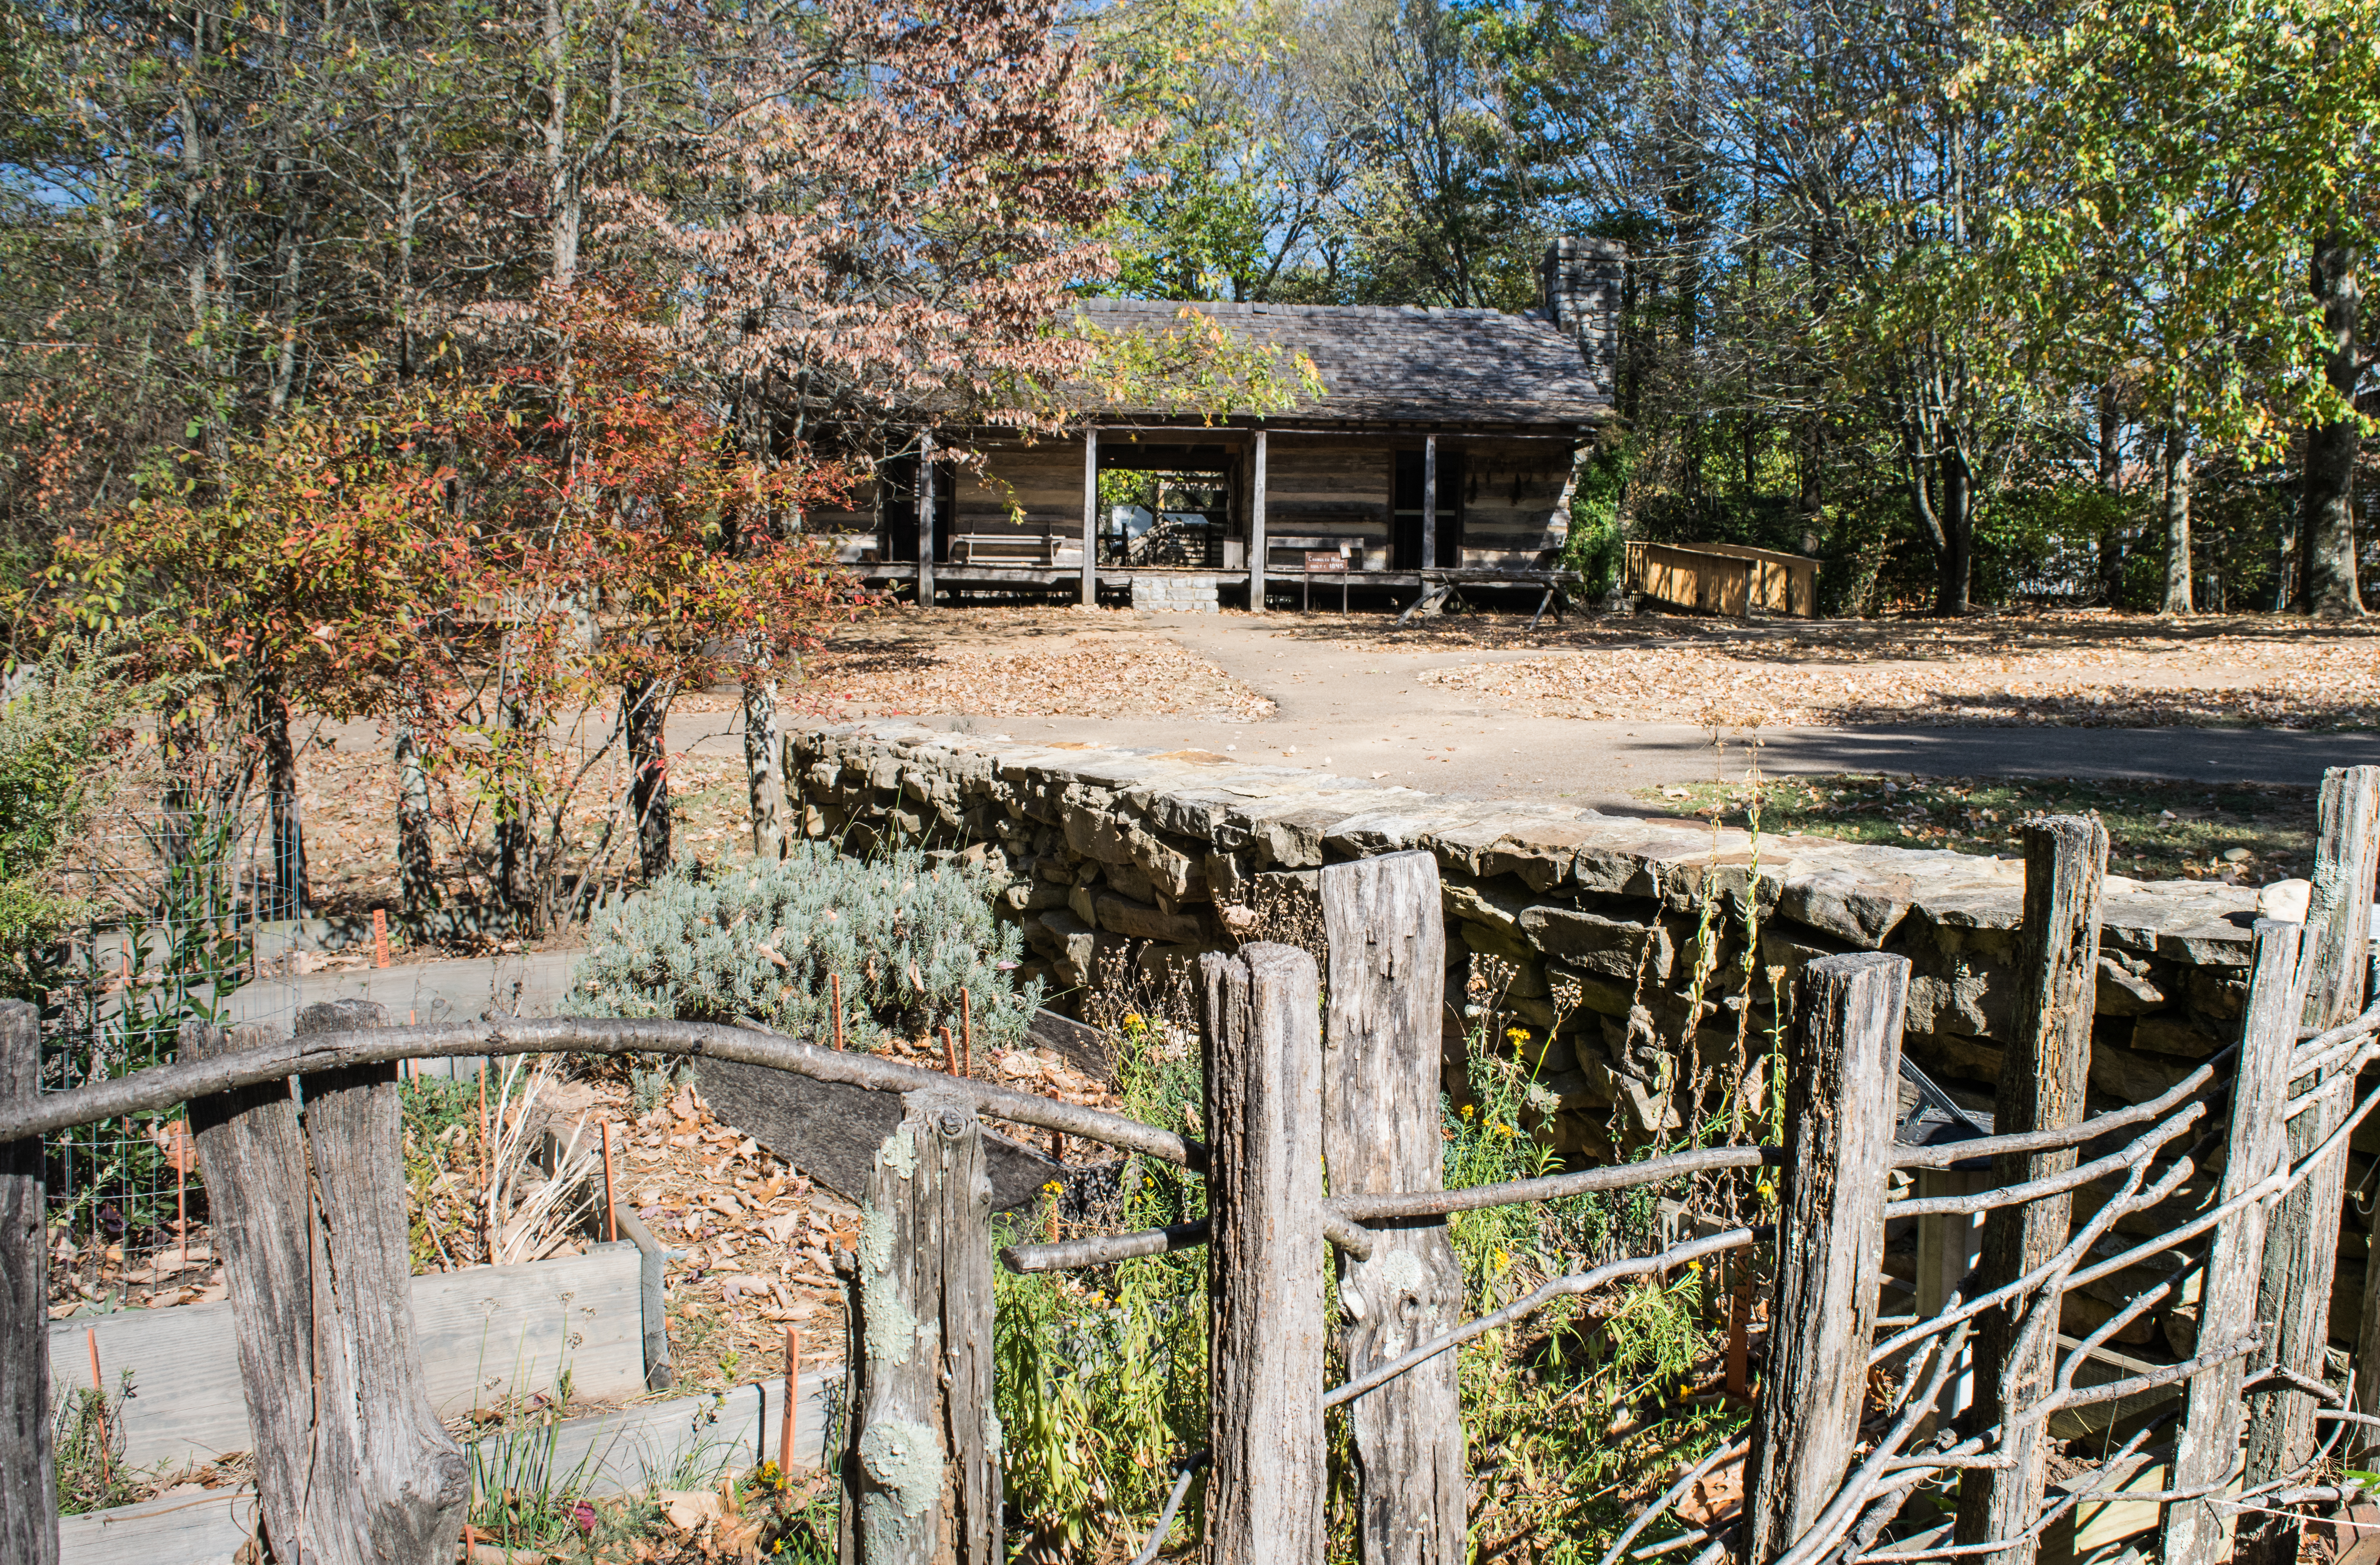 Farm life and a “shotgun” style cabin Burritt Museum